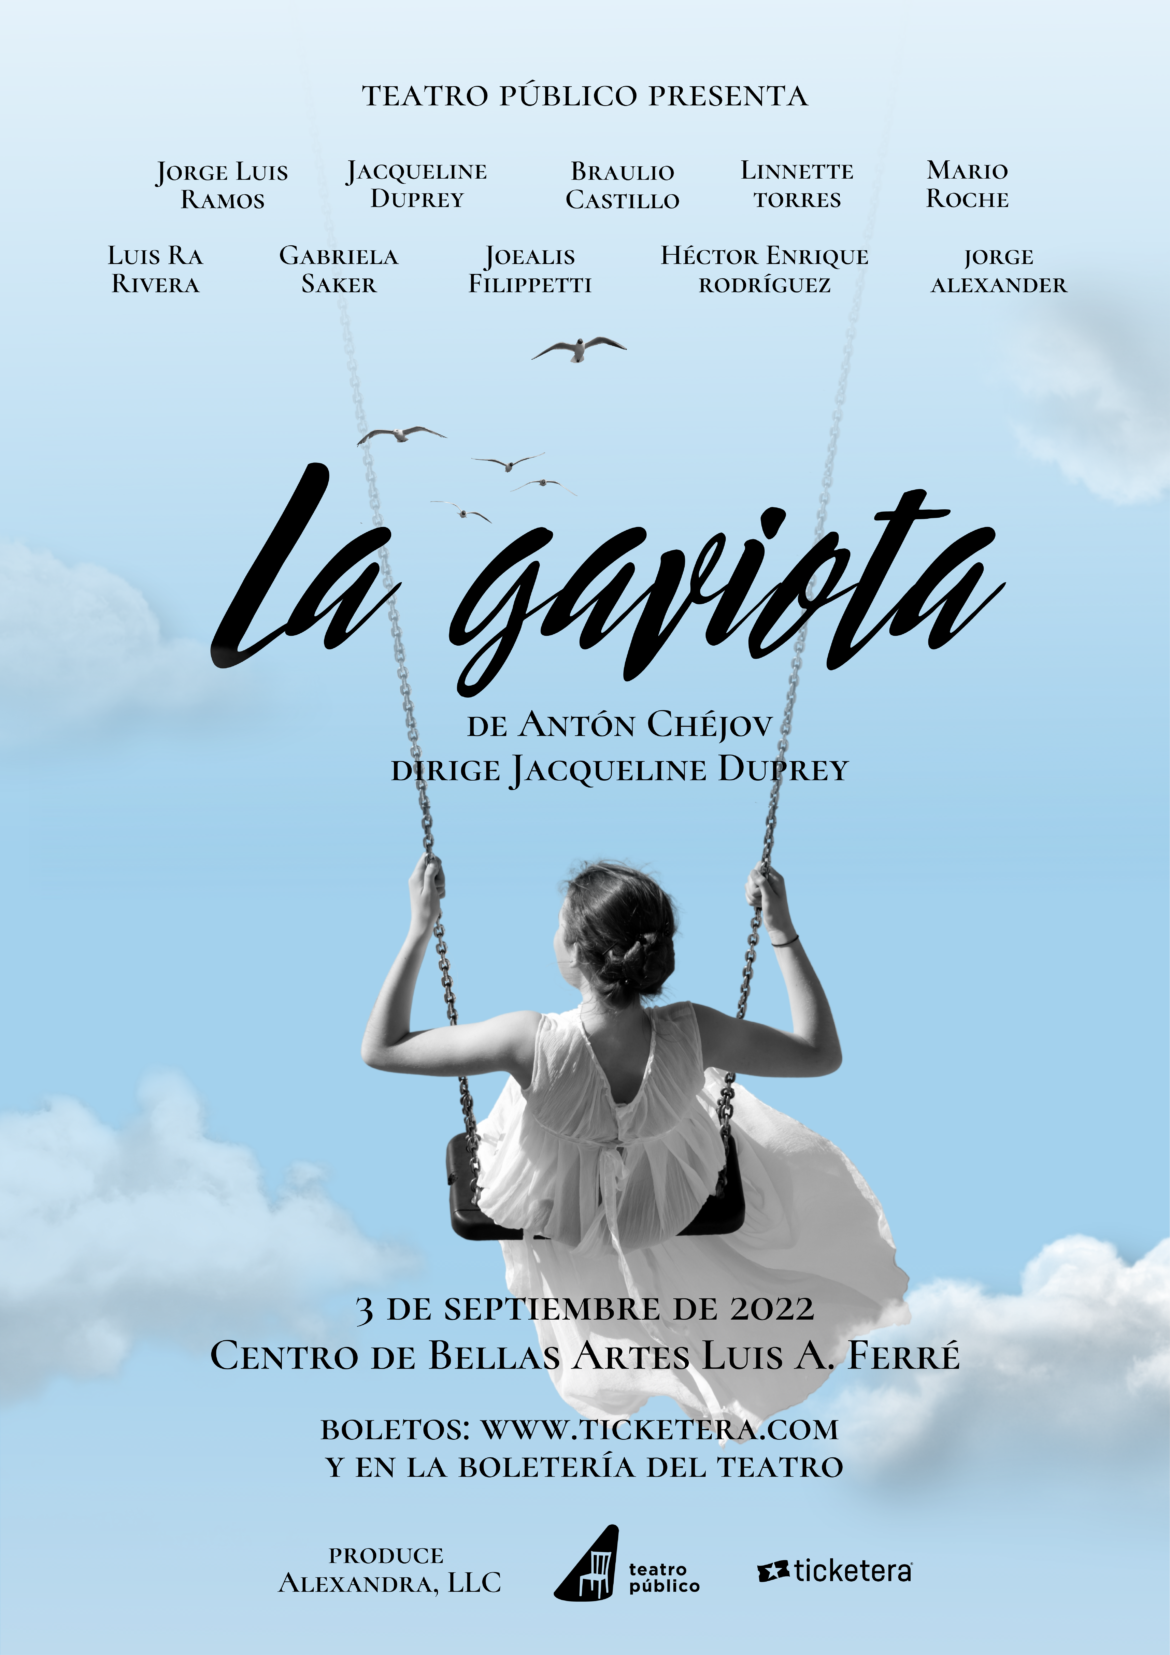 Regresa el clásico del Teatro Mundial “La Gaviota” a Bellas Artes de Santurce